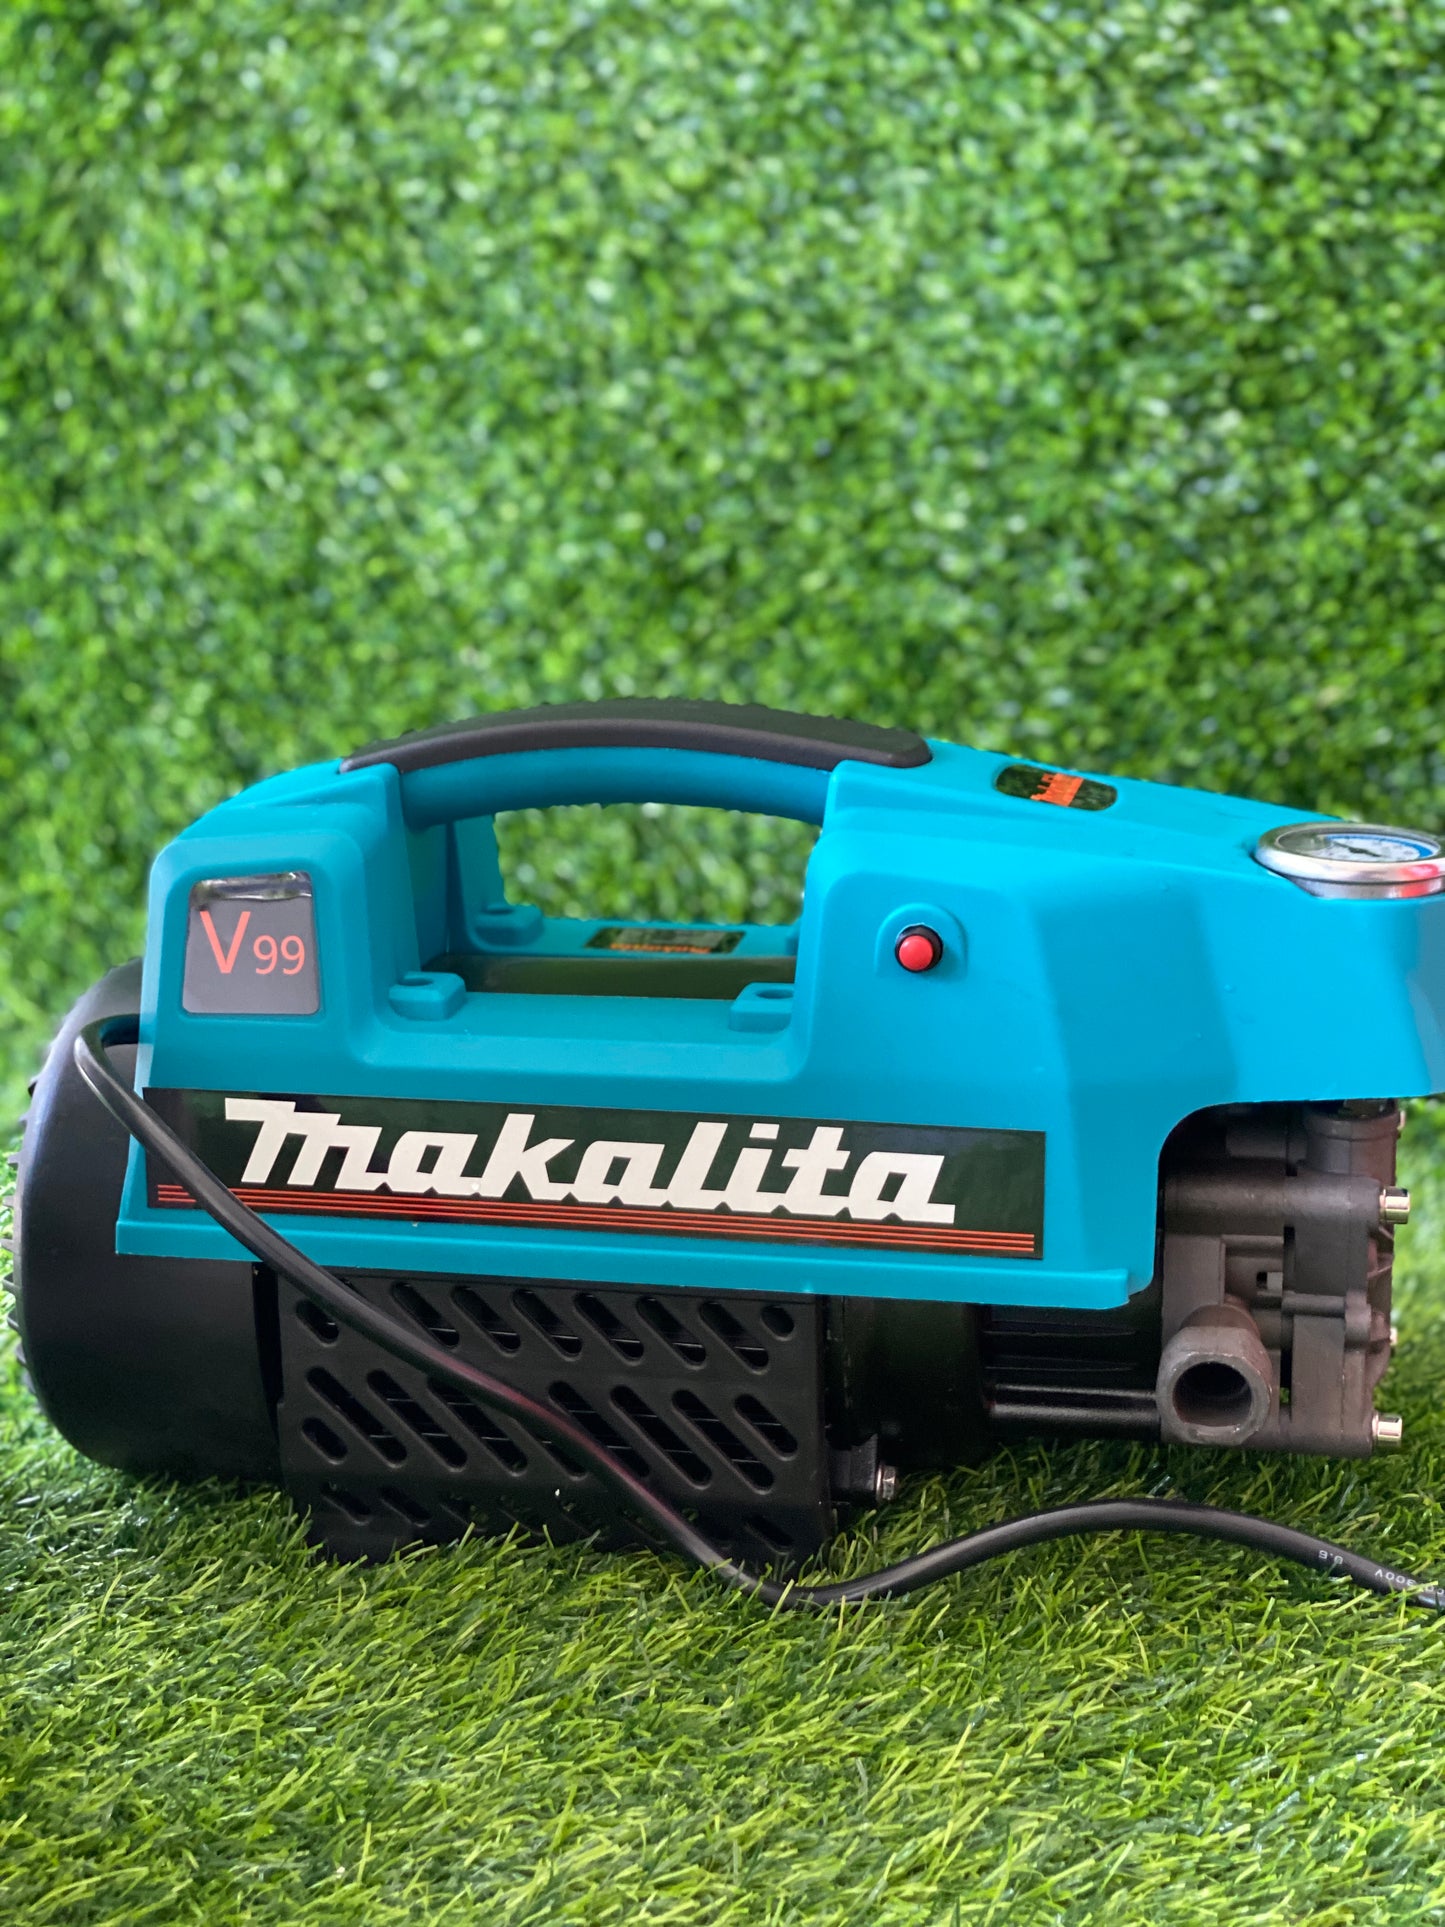 Makalita High Pressure Water Cleaning Machine